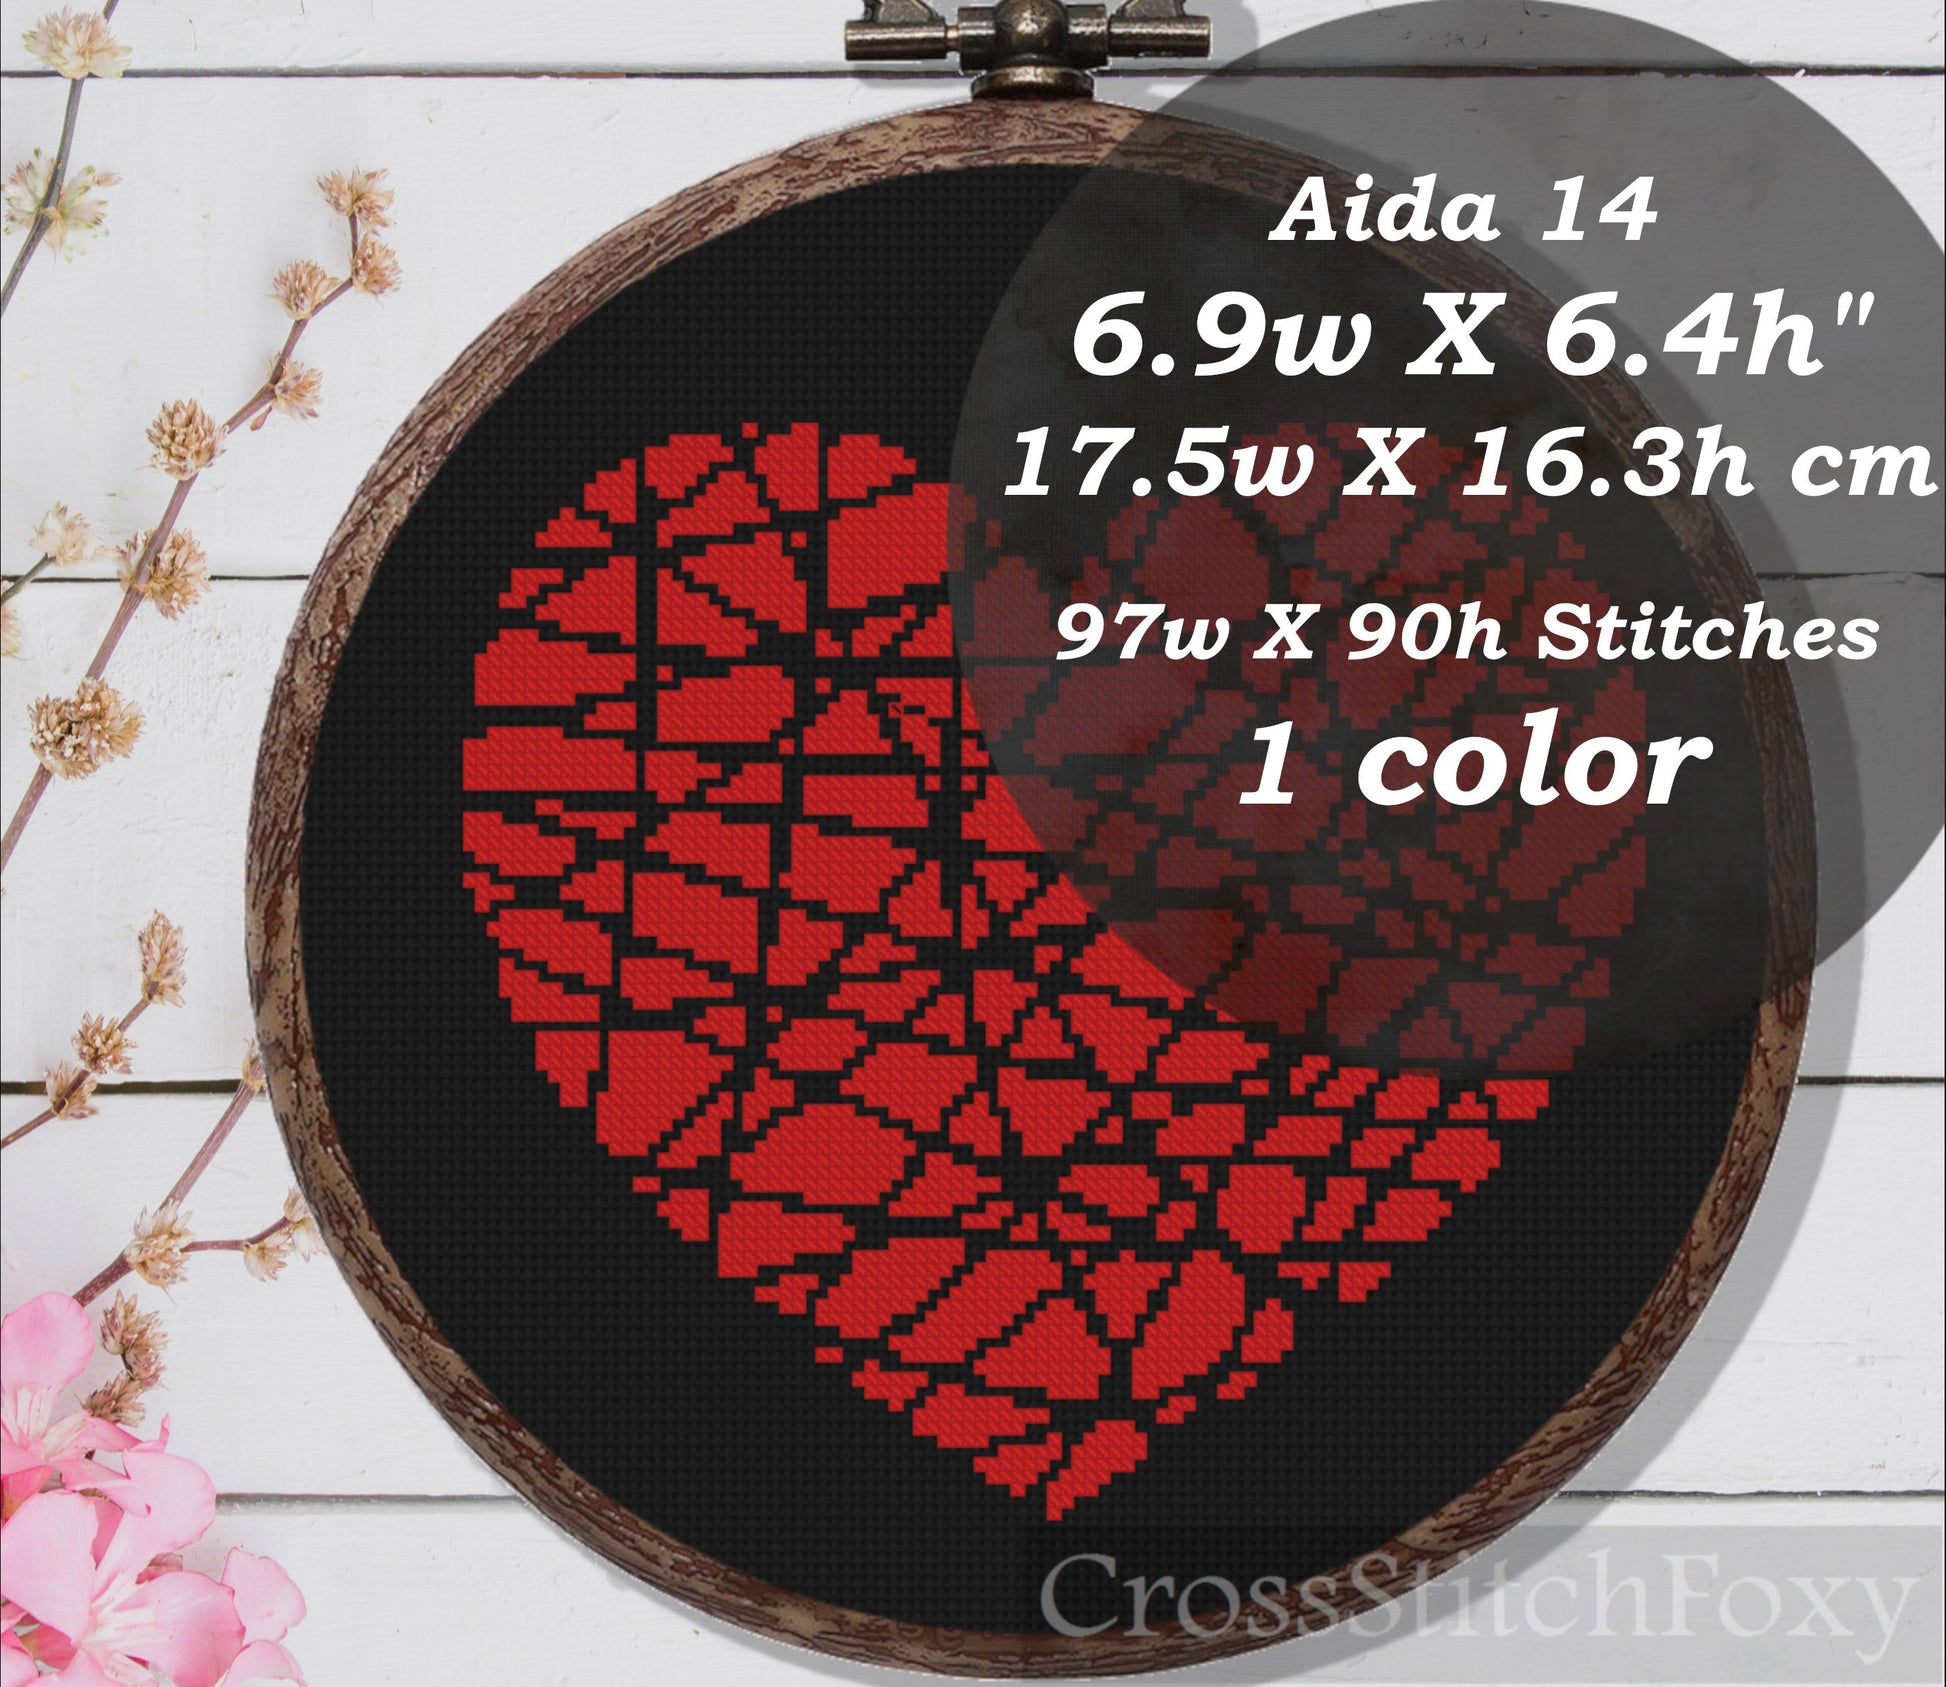 Heart cross stitch patterns